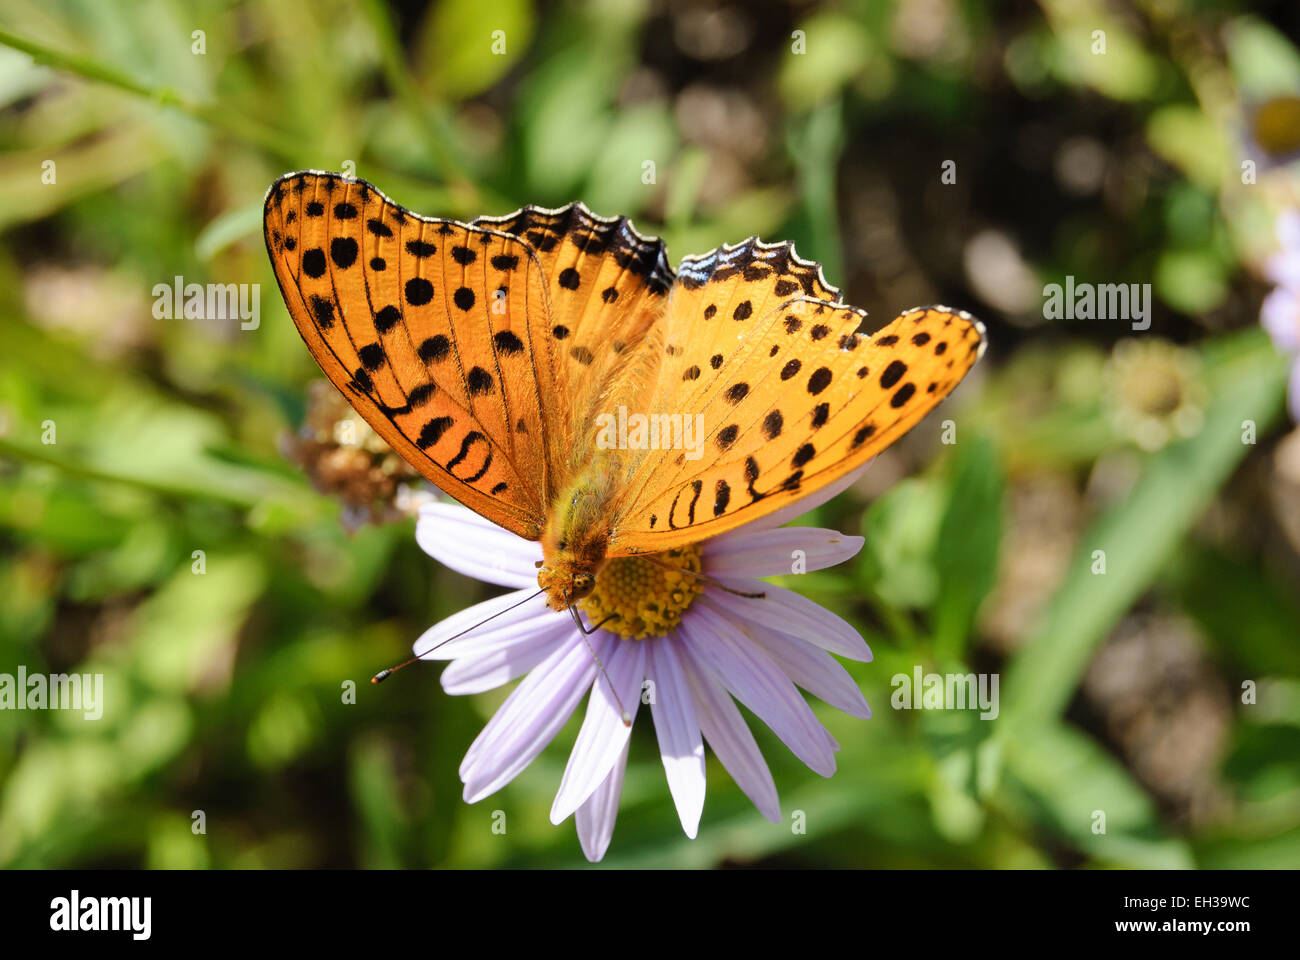 Colore arancione farfalla con macchia nera su un fiore Foto Stock